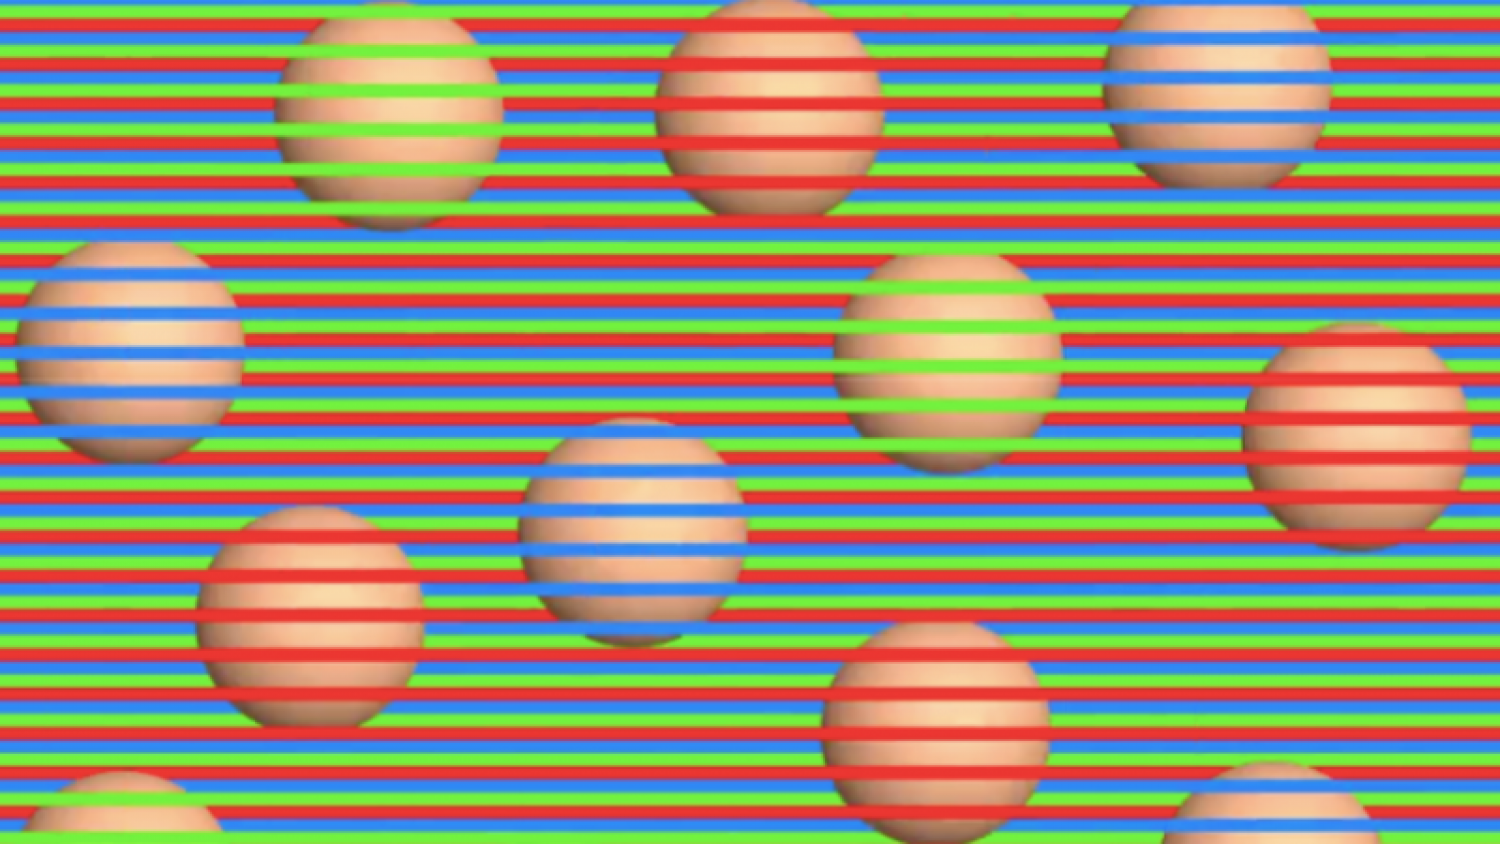 Optikai csalódás: ezek a golyók egyszínűek! Szerinted melyik szín?